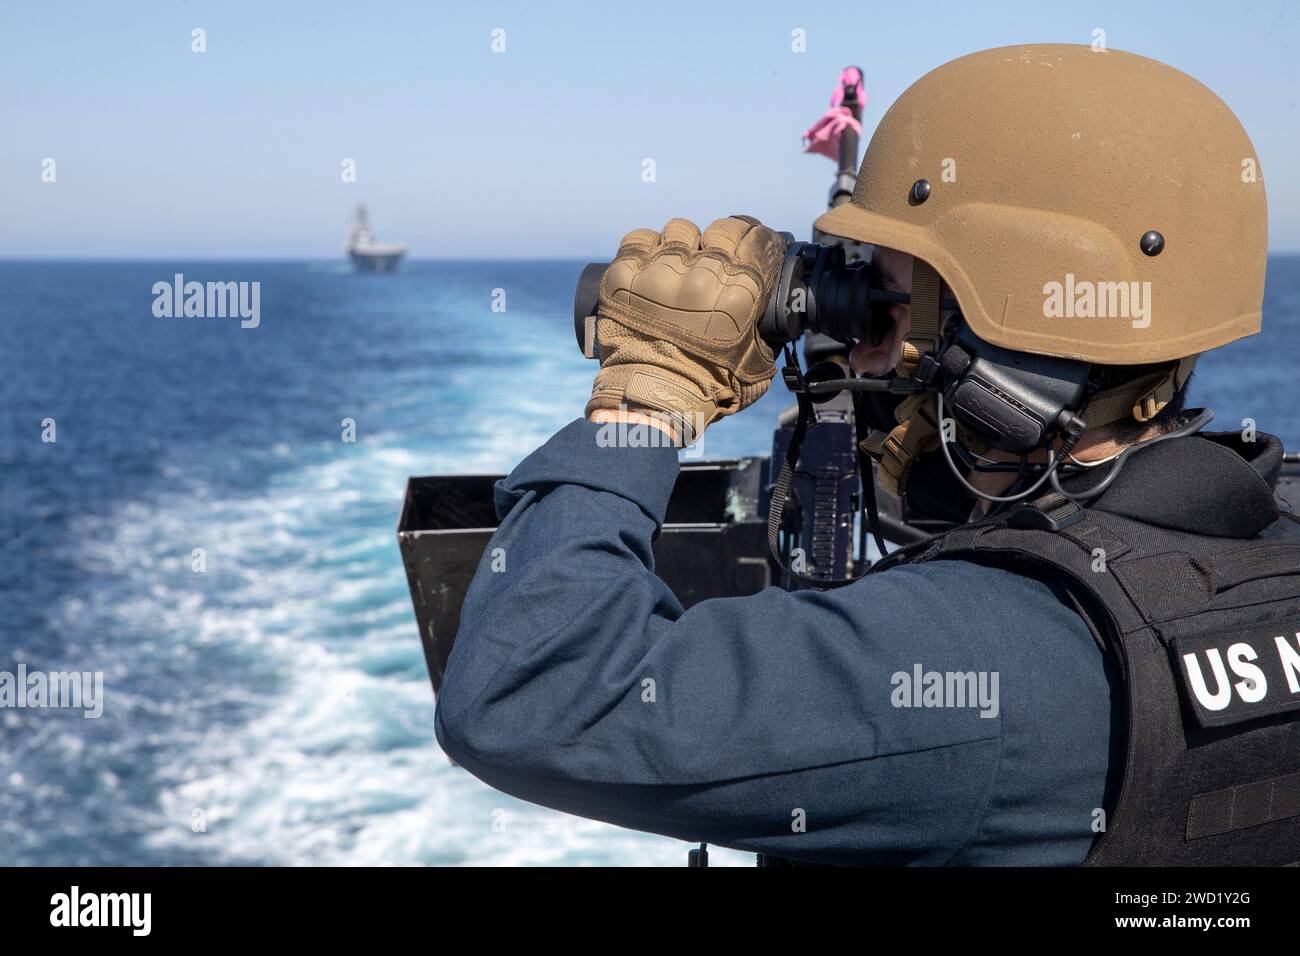 Gunner's Mate scanne l'océan Pacifique à la recherche de cibles avec des jumelles tout en assurant la sécurité. Banque D'Images